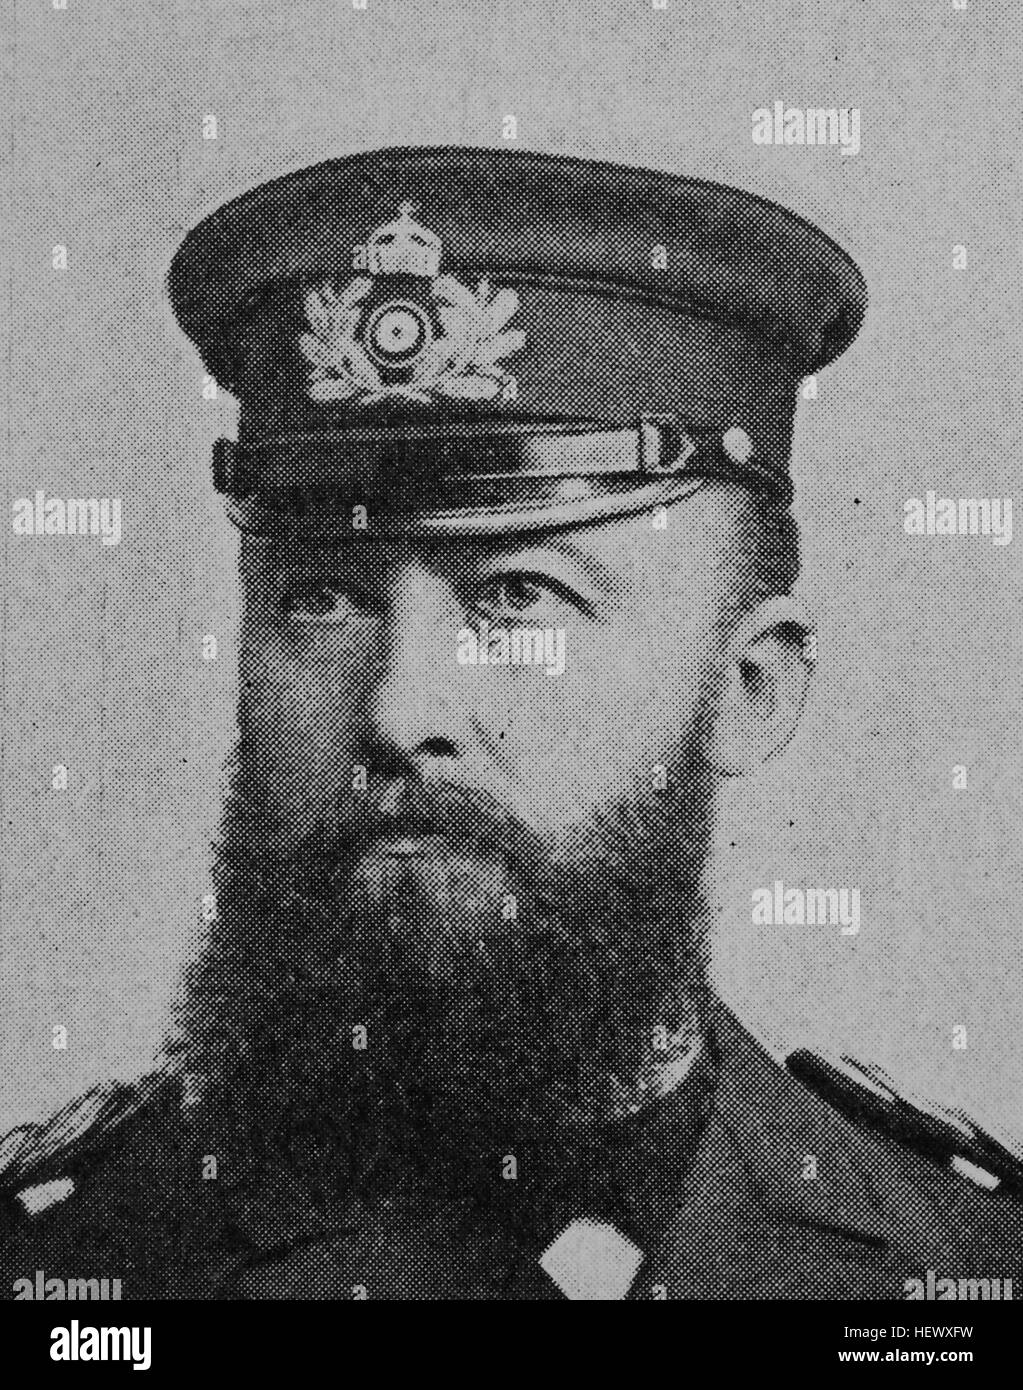 Alfred Peter Friedrich von Tirpitz, 19 mars 1849 - 6 mars 1930, était un Allemand Grossadmiral, grand amiral, Secrétaire d'État du Bureau de la Marine impériale allemande, photo de 1895, l'amélioration numérique Banque D'Images